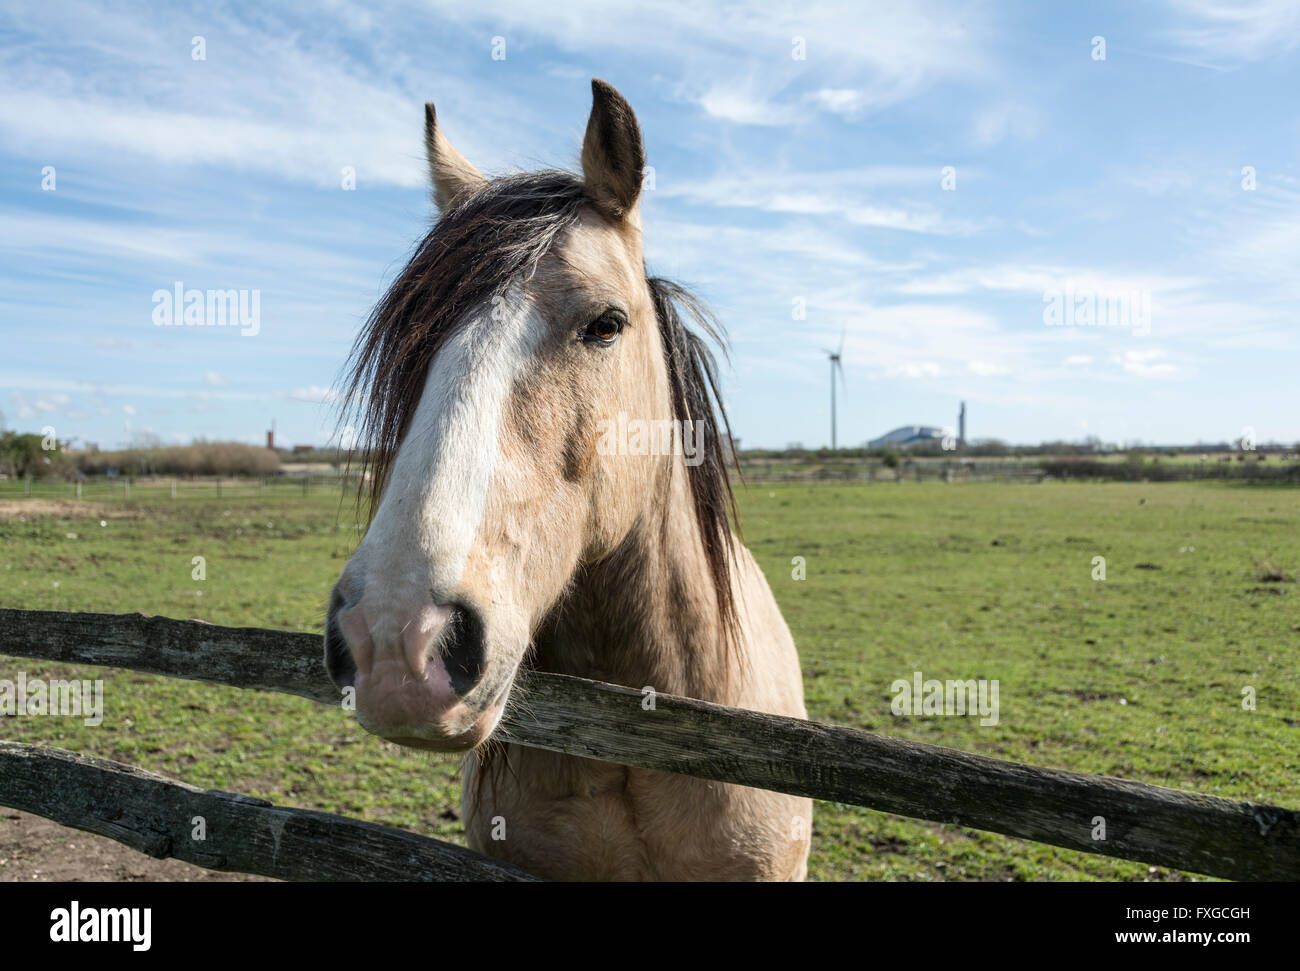 Horses in a field in London's Green Belt near Crossness, London, SE2, UK Stock Photo